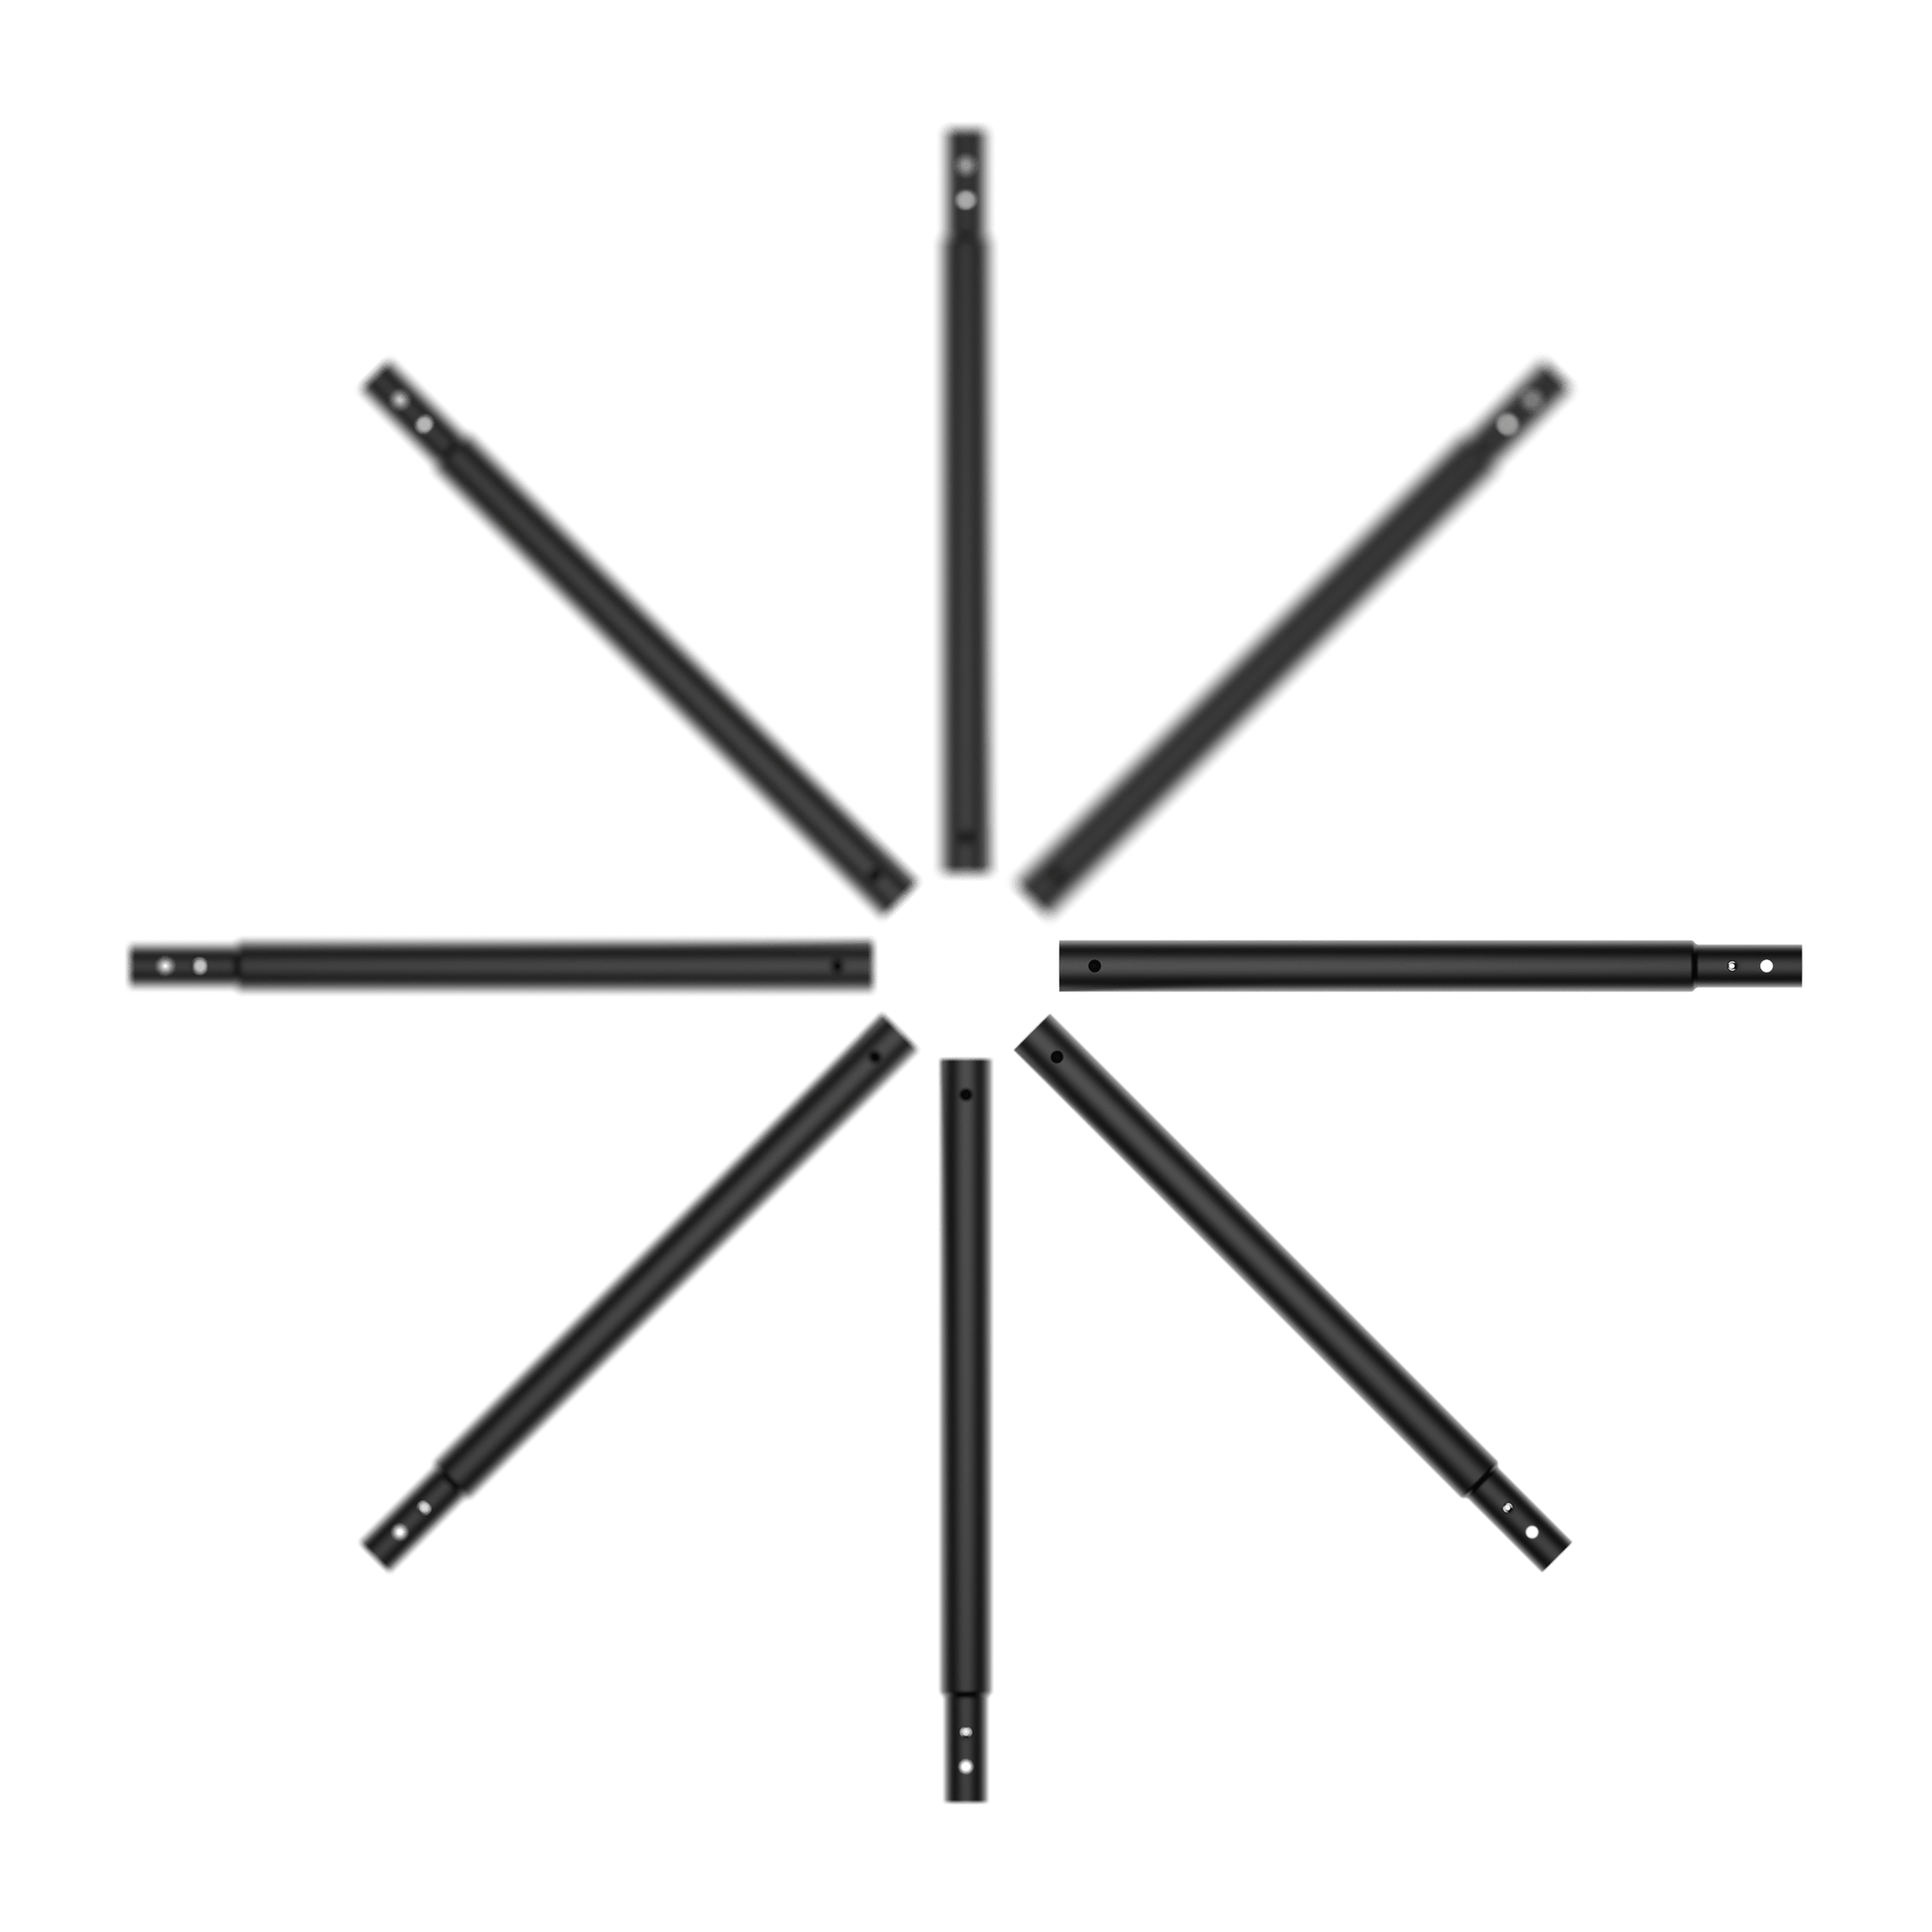 Huit tubes ACON X 17 Kit de hauteur personnalisée placés en forme d'étoile.